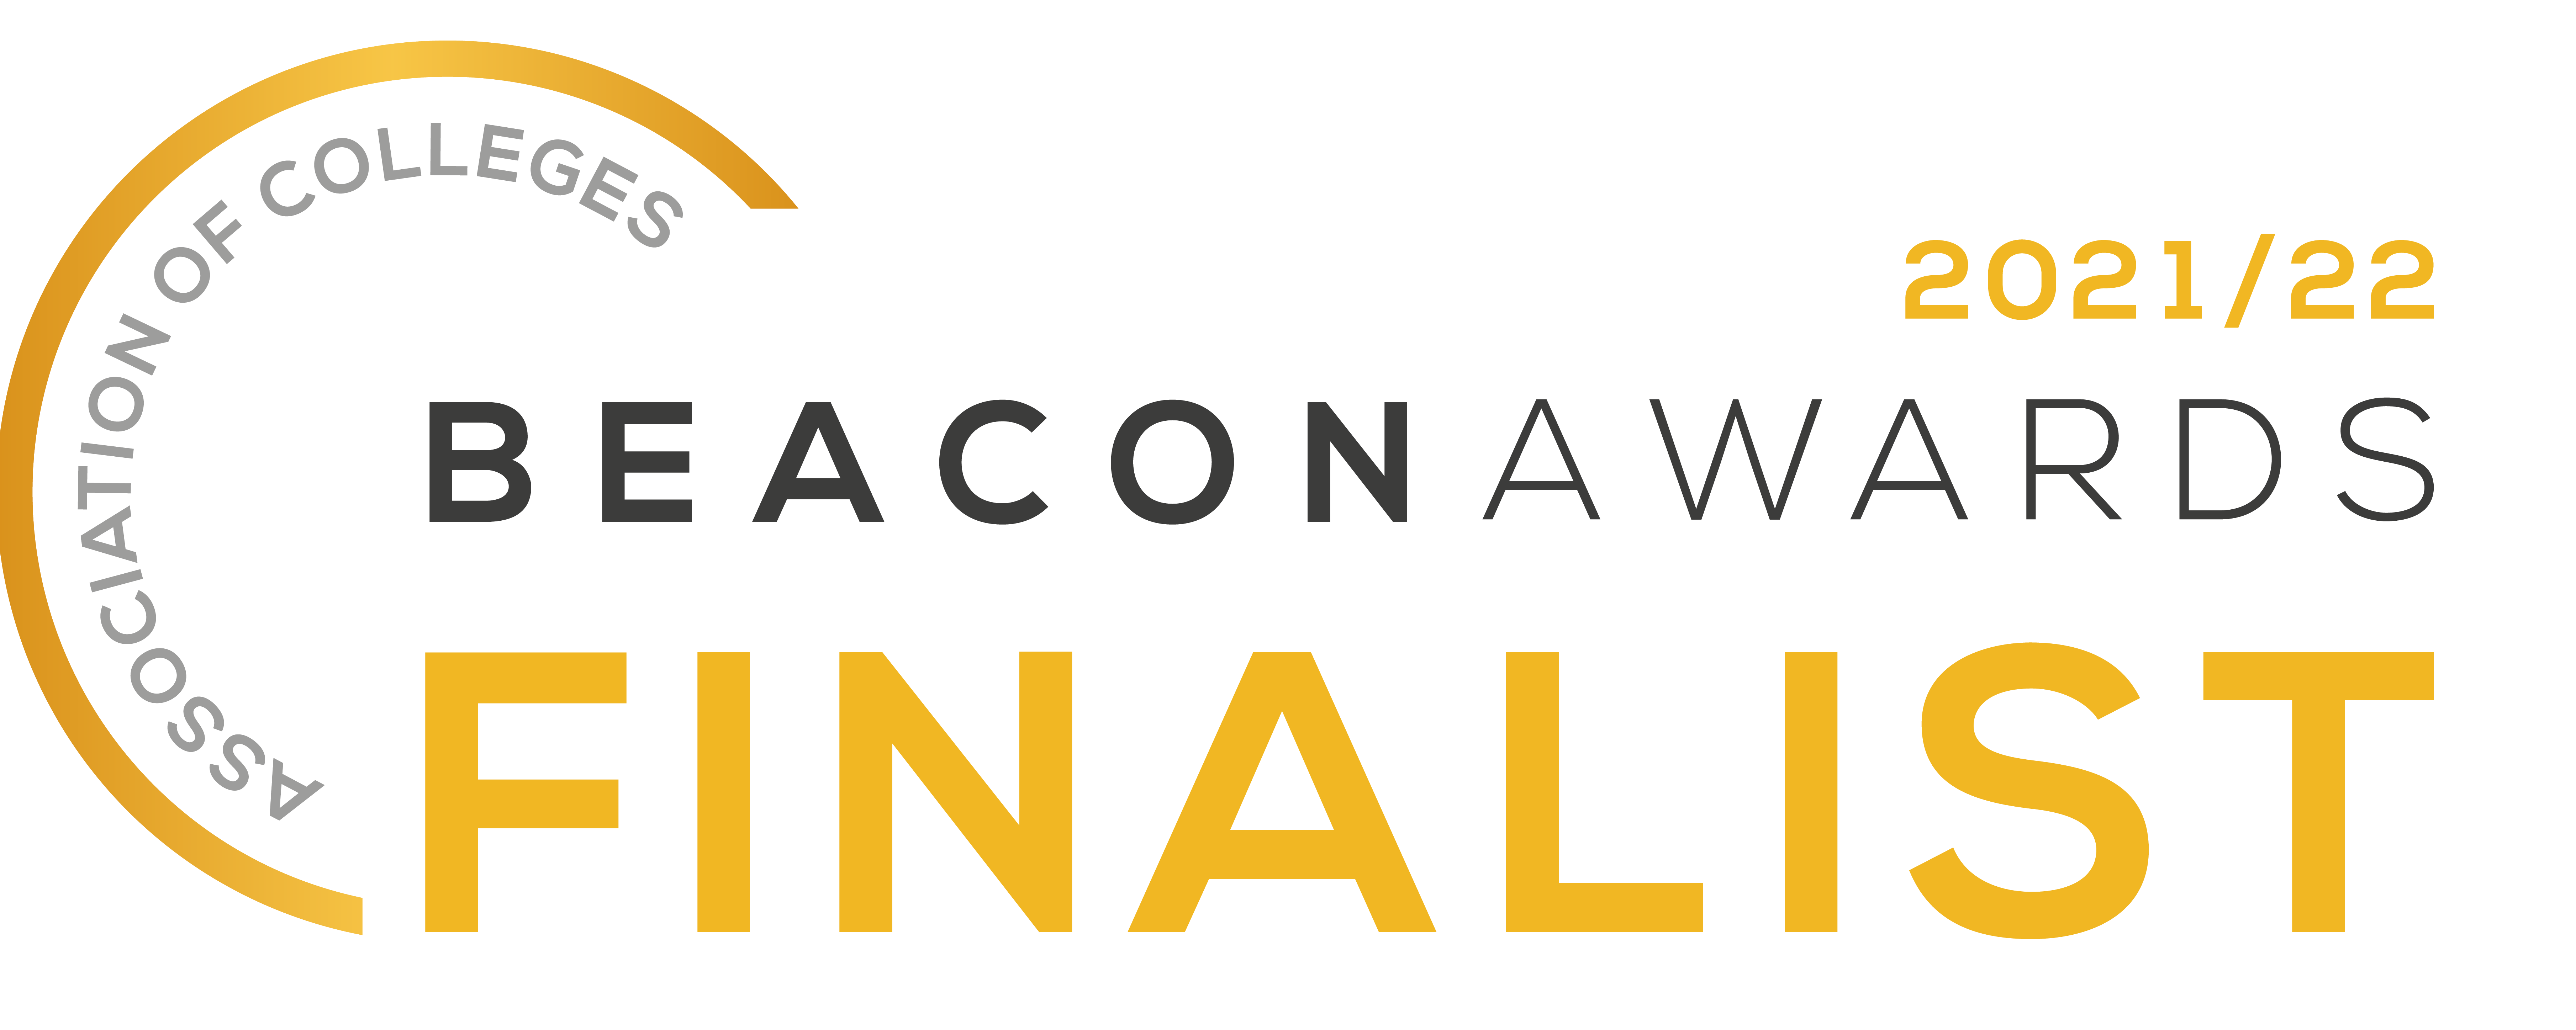 beacon award finalist logo